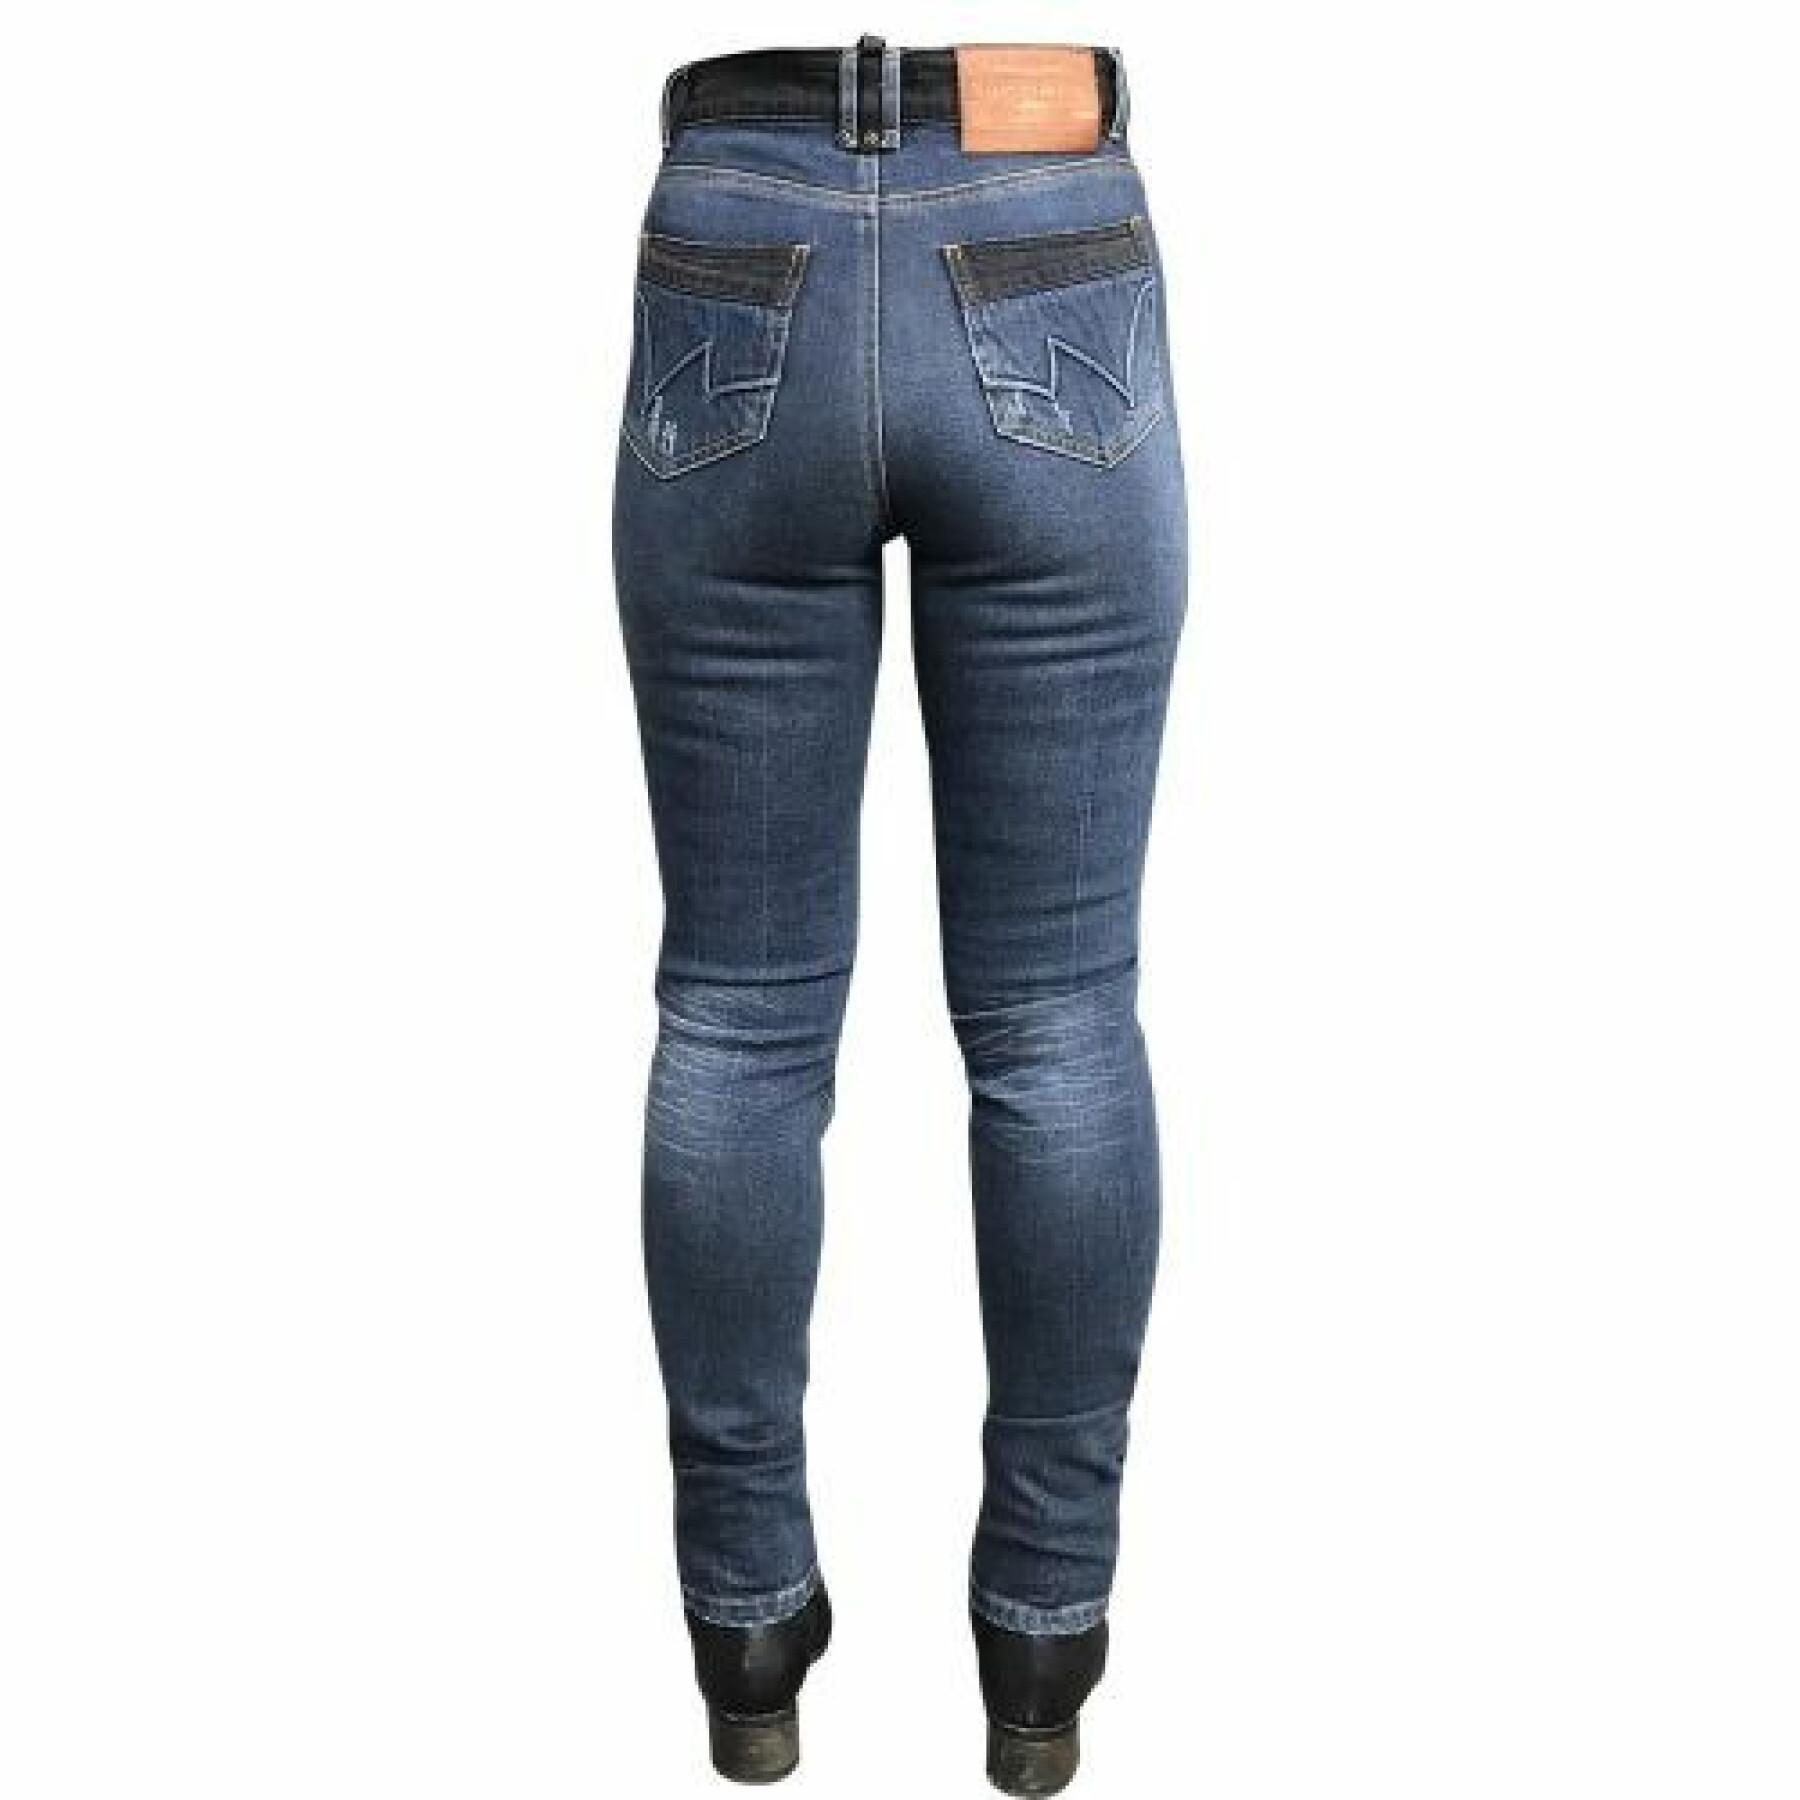 Motorrad-Jeans für Frauen Overlap Kara